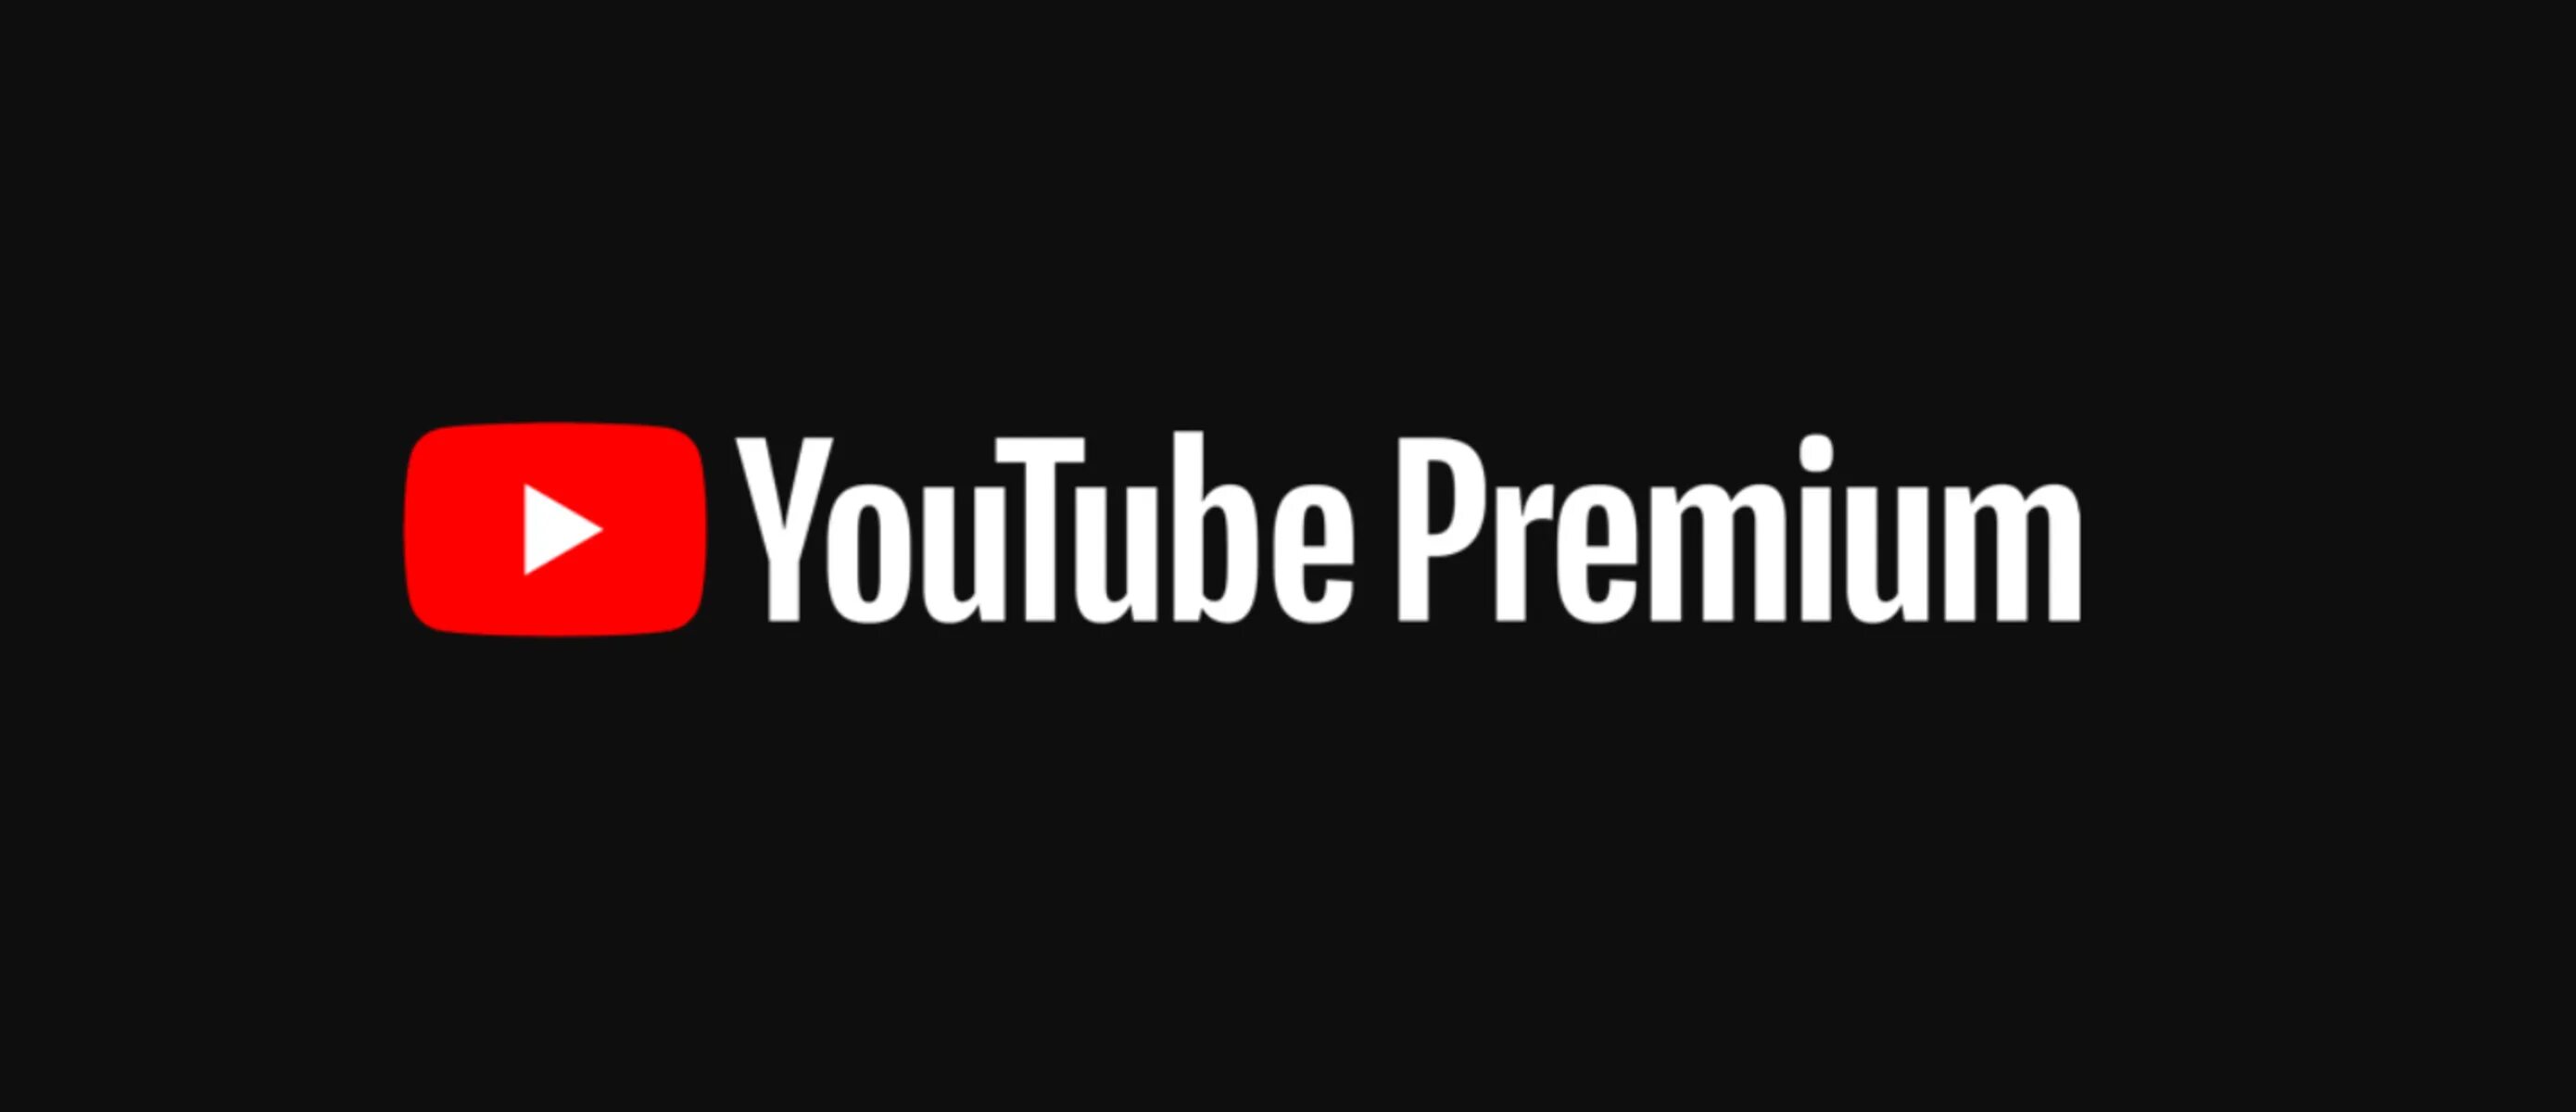 Ютуб премиум без рекламы на андроид последняя. Youtube Premium. Ютуб премиум. Ютуб премиум логотип. Youtube фото.